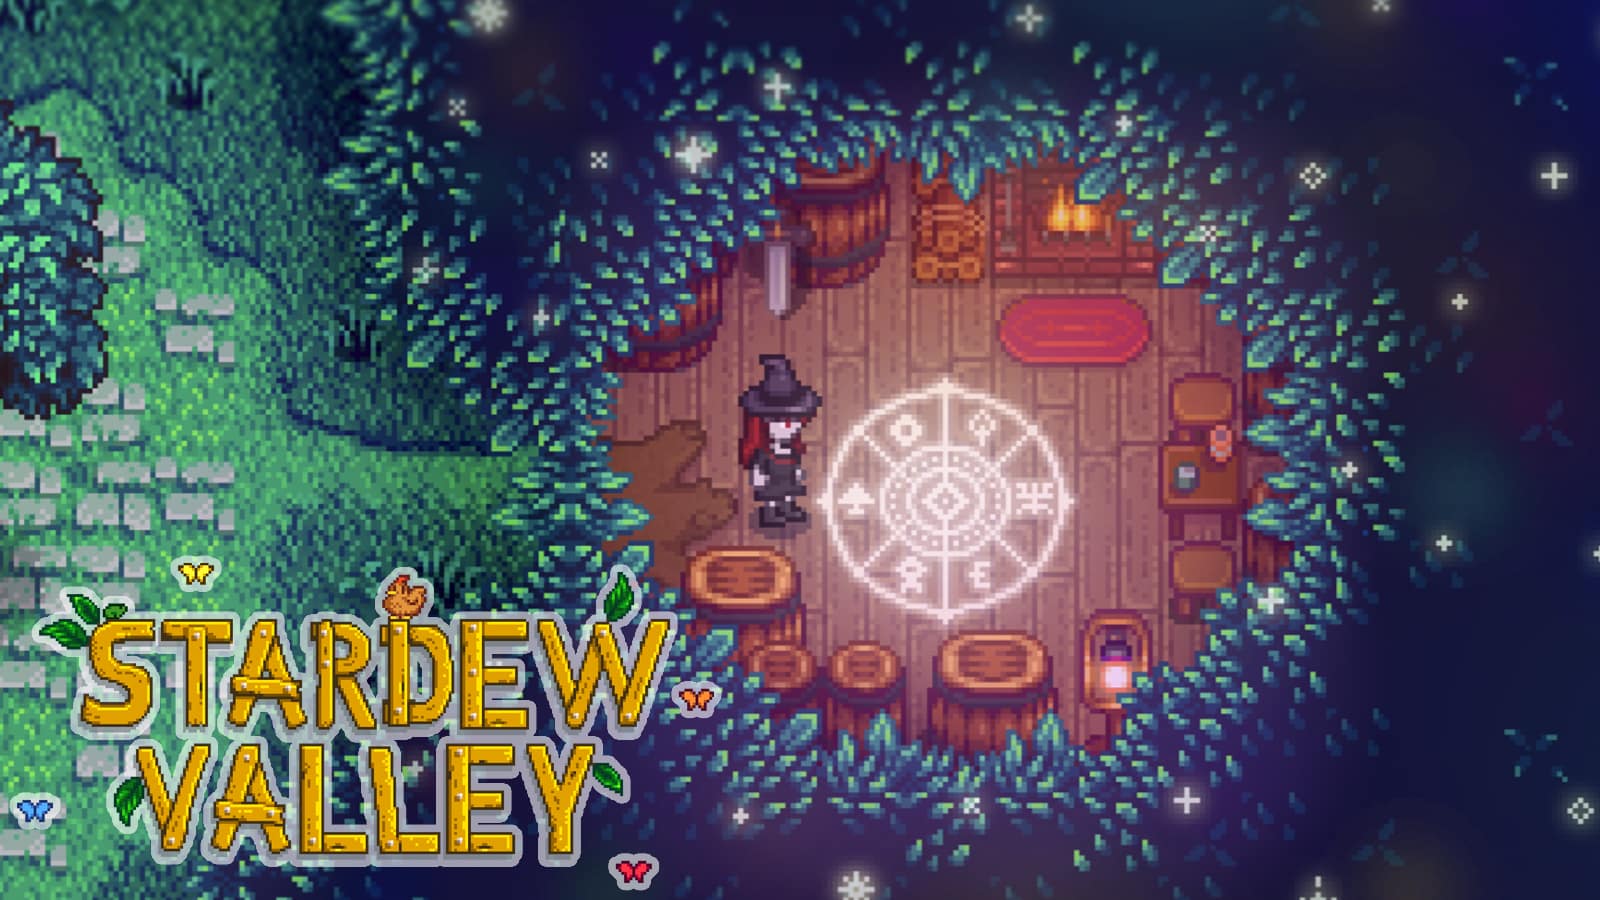 stardewvalley anime mods at Stardew Valley Nexus - Mods and community | Stardew  valley fanart, Stardew valley, Pixel art